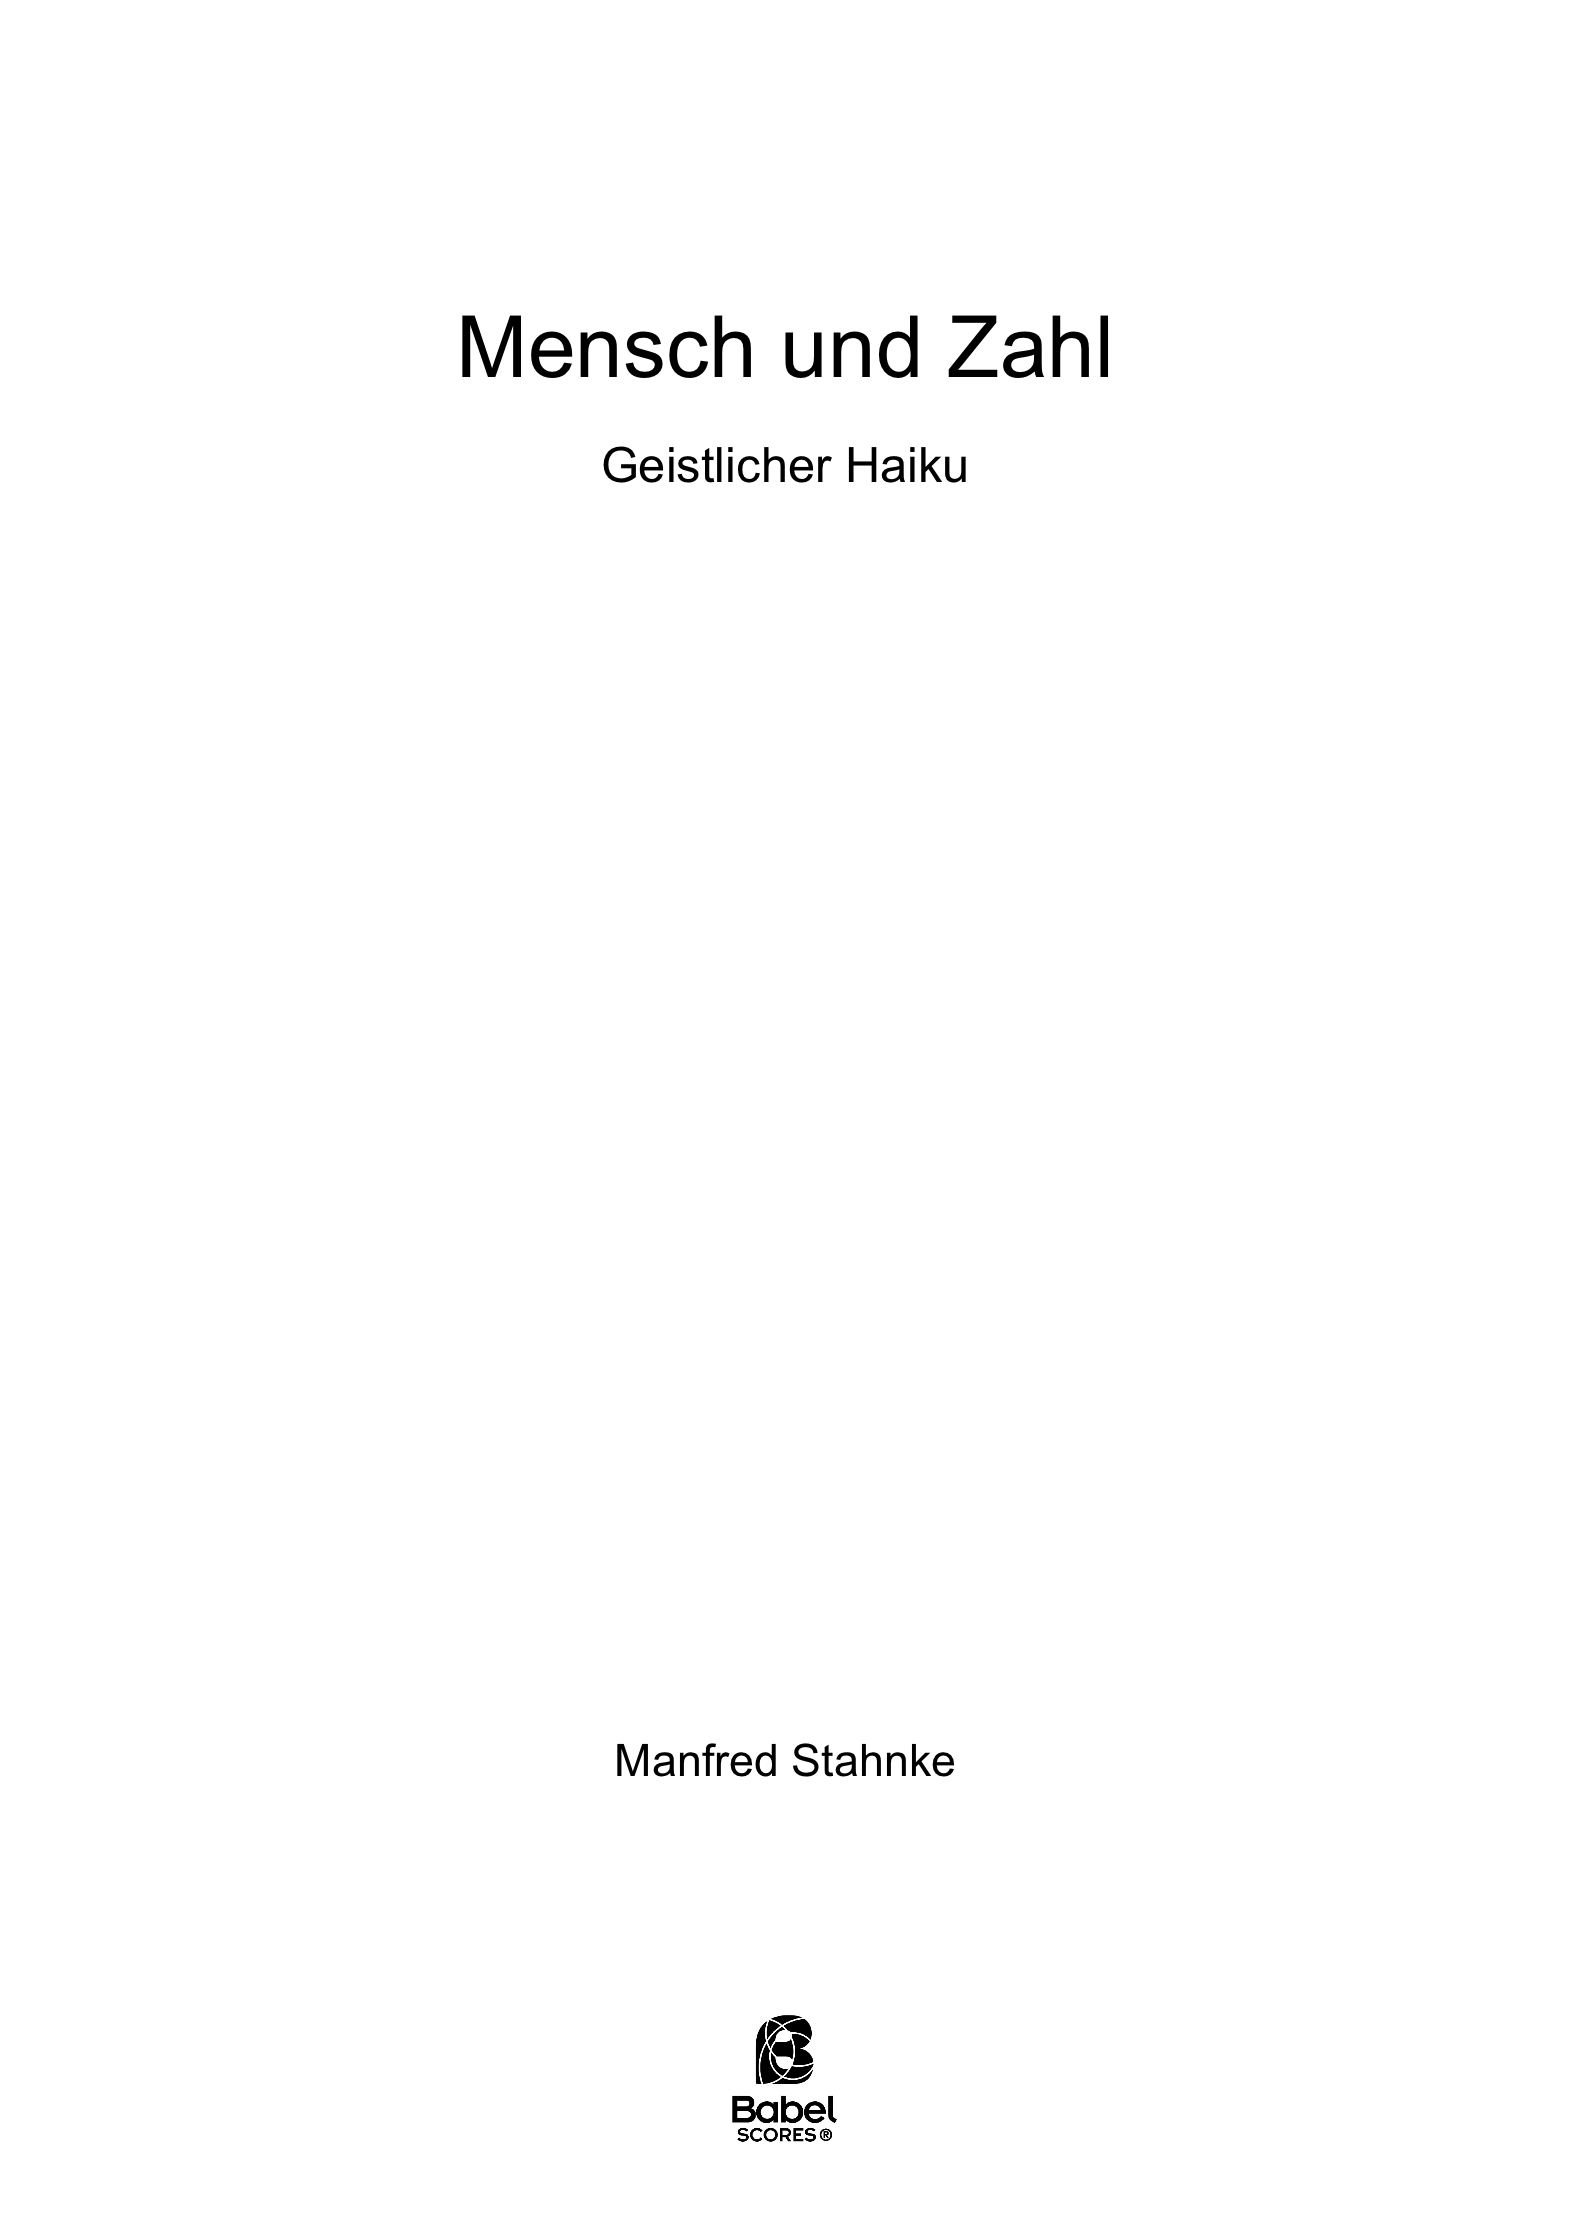 mensch und zahl A4 z 2 261 1 899